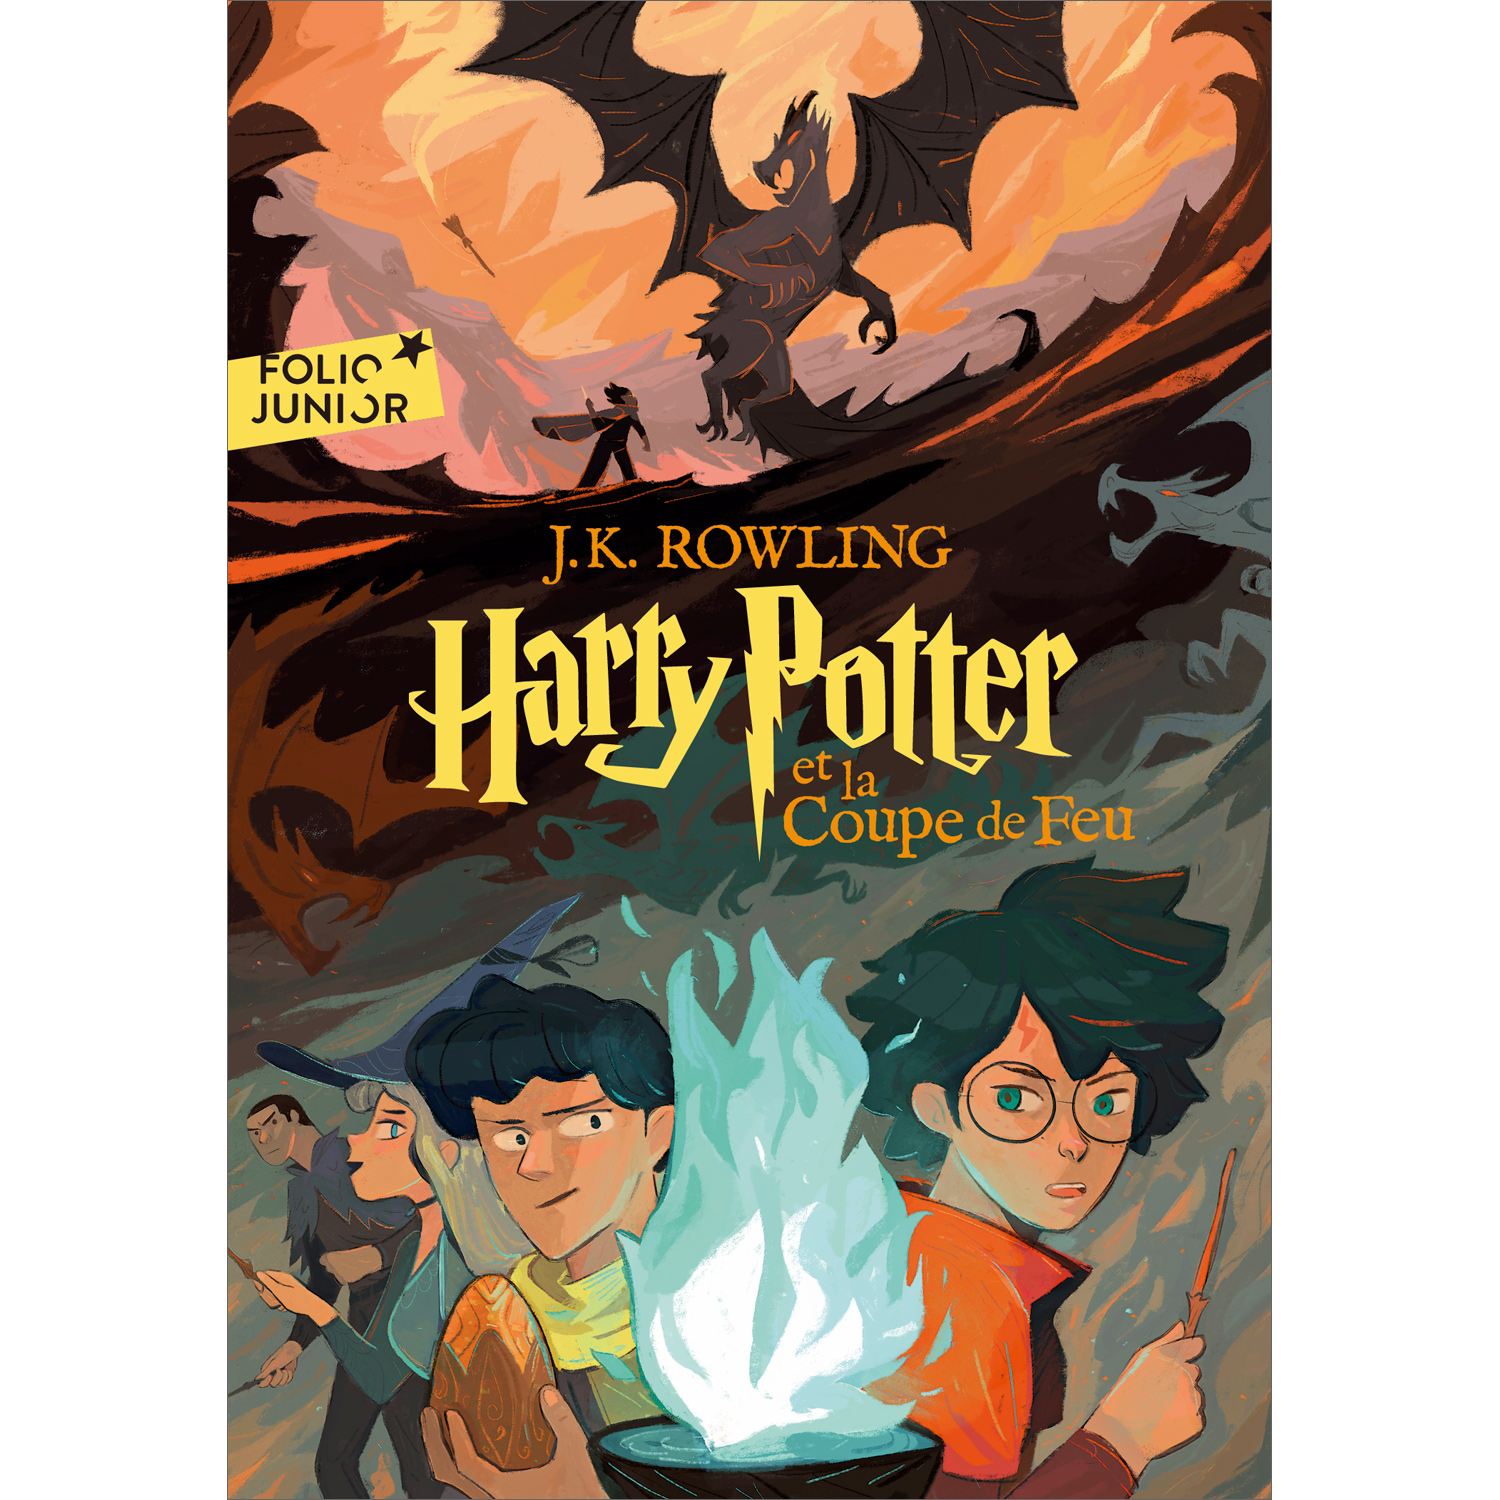 Harry Potter Et La Chambre Des Secrets (Folio Junior) (French Edition)